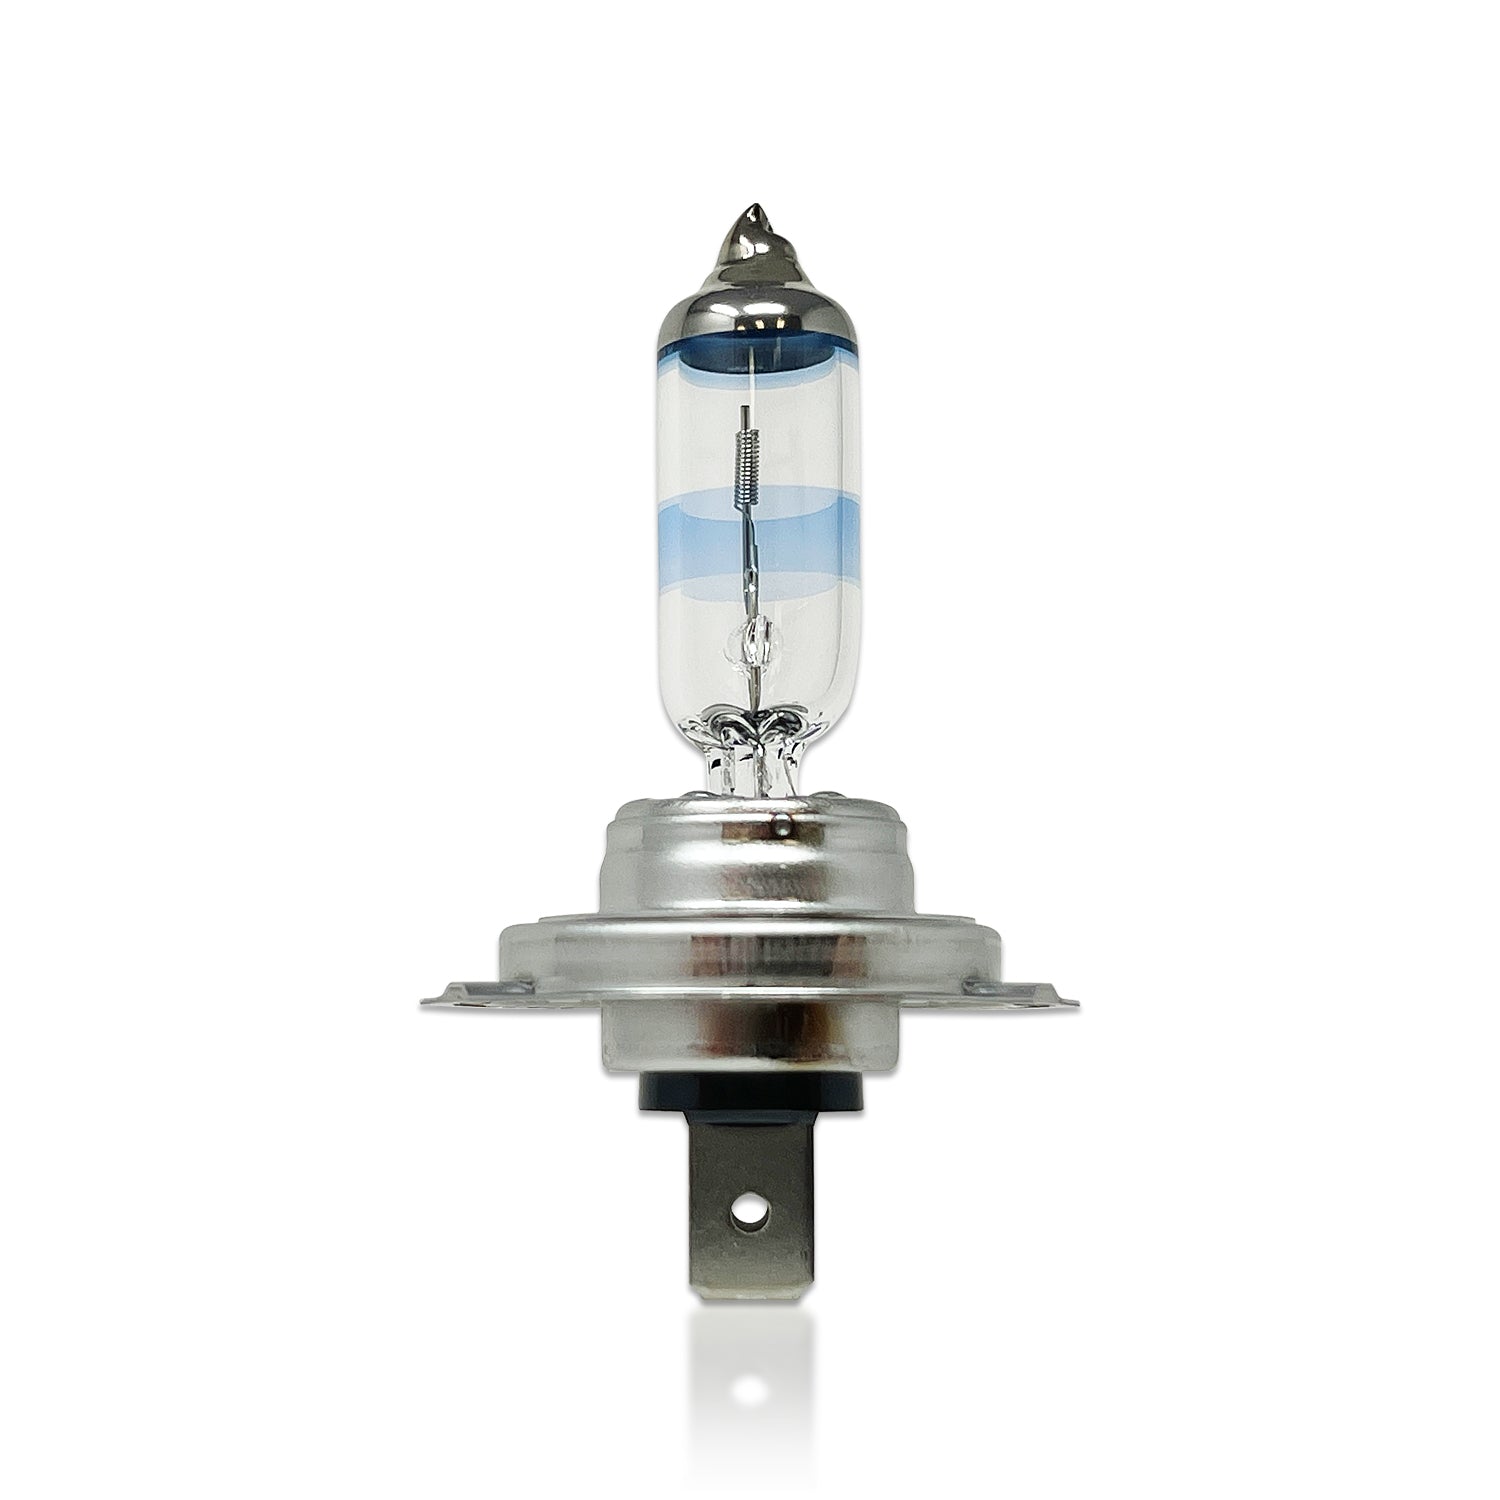 Philips H7 X-tremeVision Low Beam/High Beam Lamp, 12972XVB2